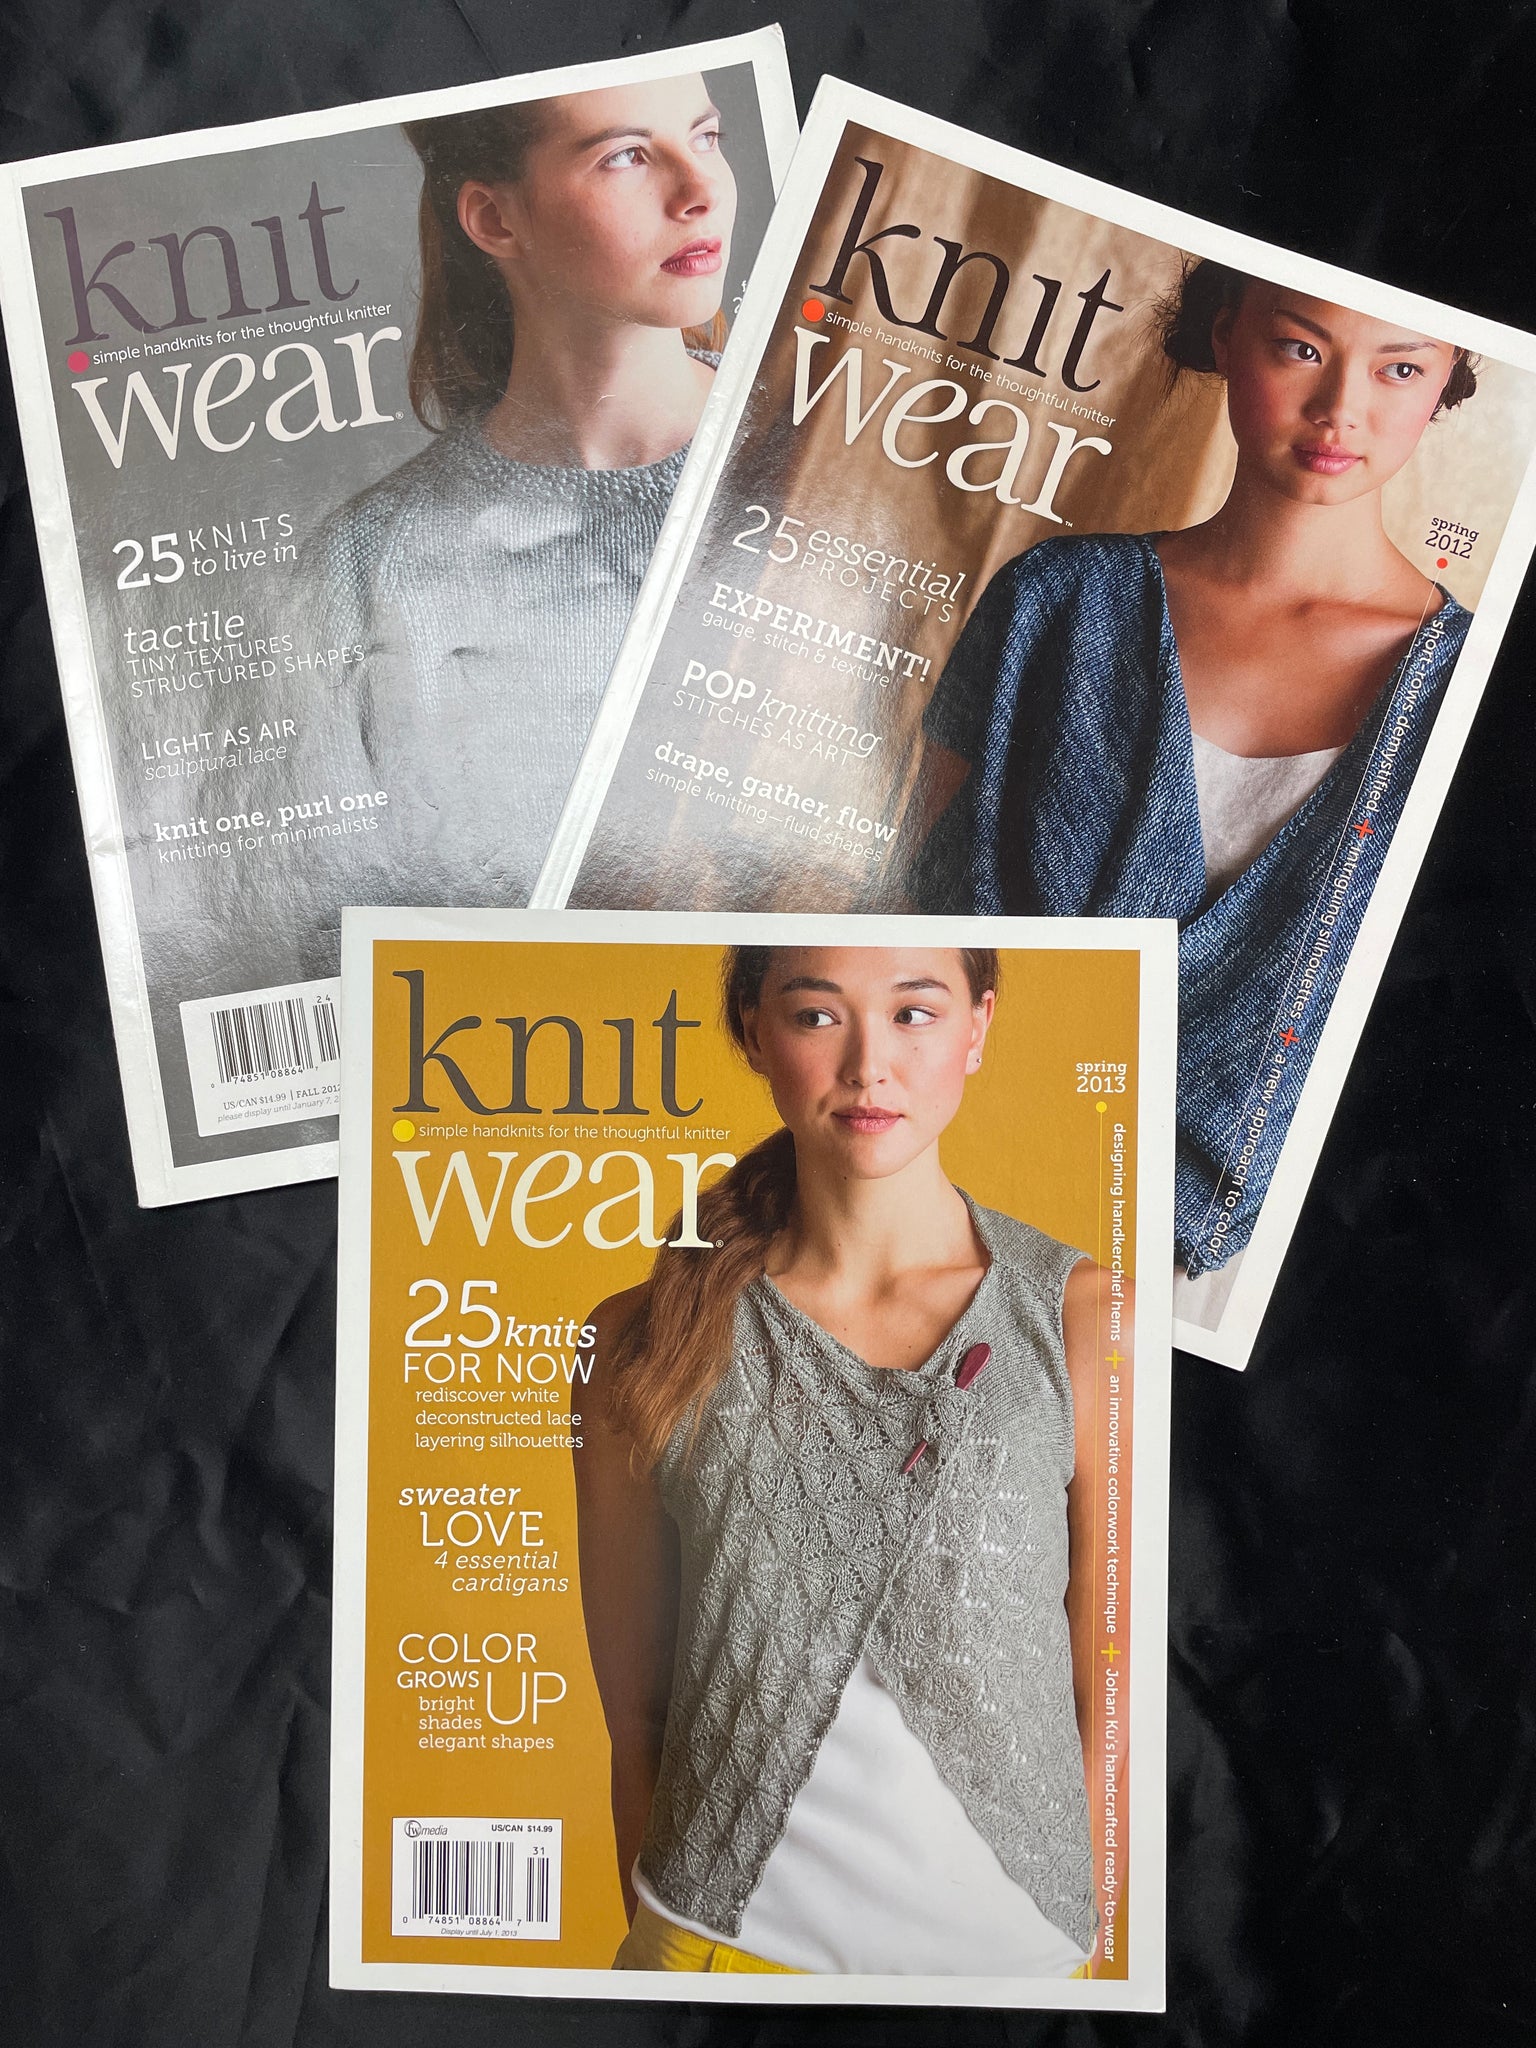 2012 and 2013 Knitting Magazine Bundle - "Knit Wear"